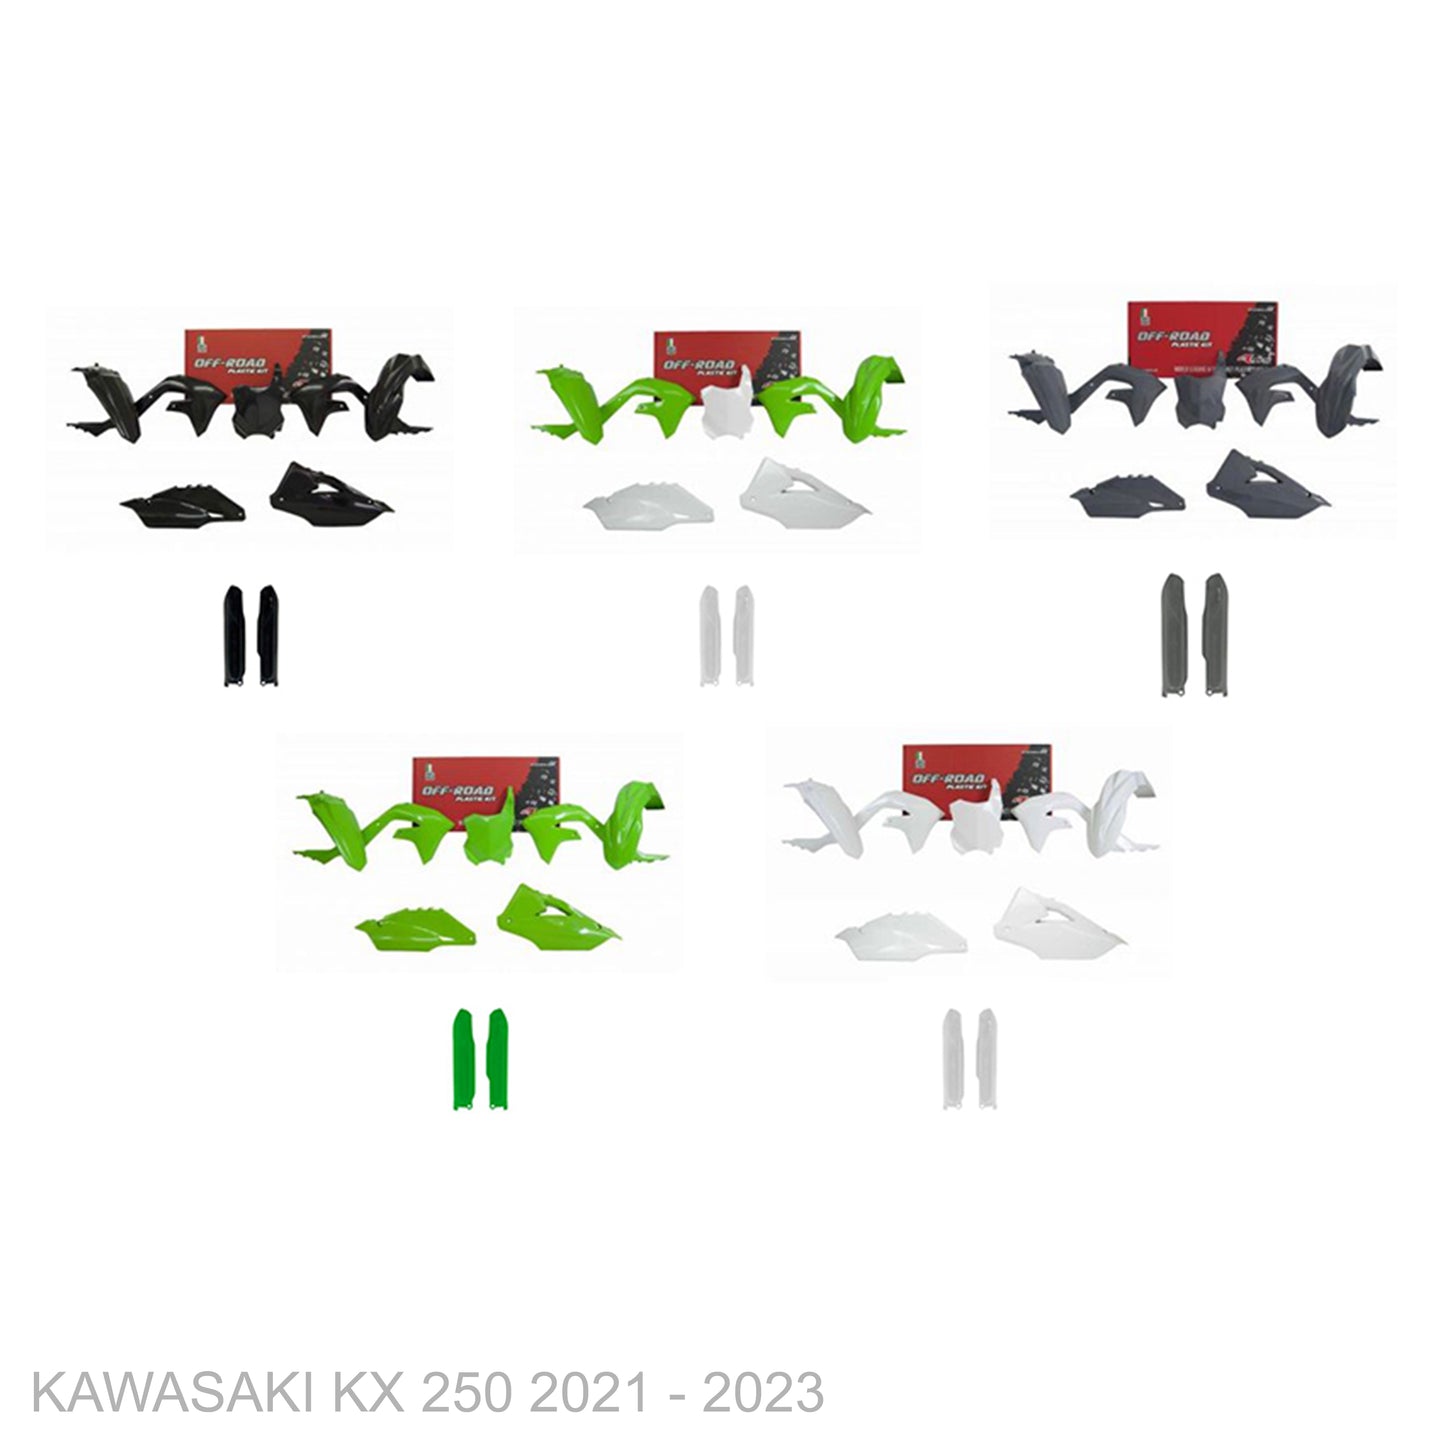 KAWASAKI KX 250 2021 - 2023 Start From Scratch Graphics Kits